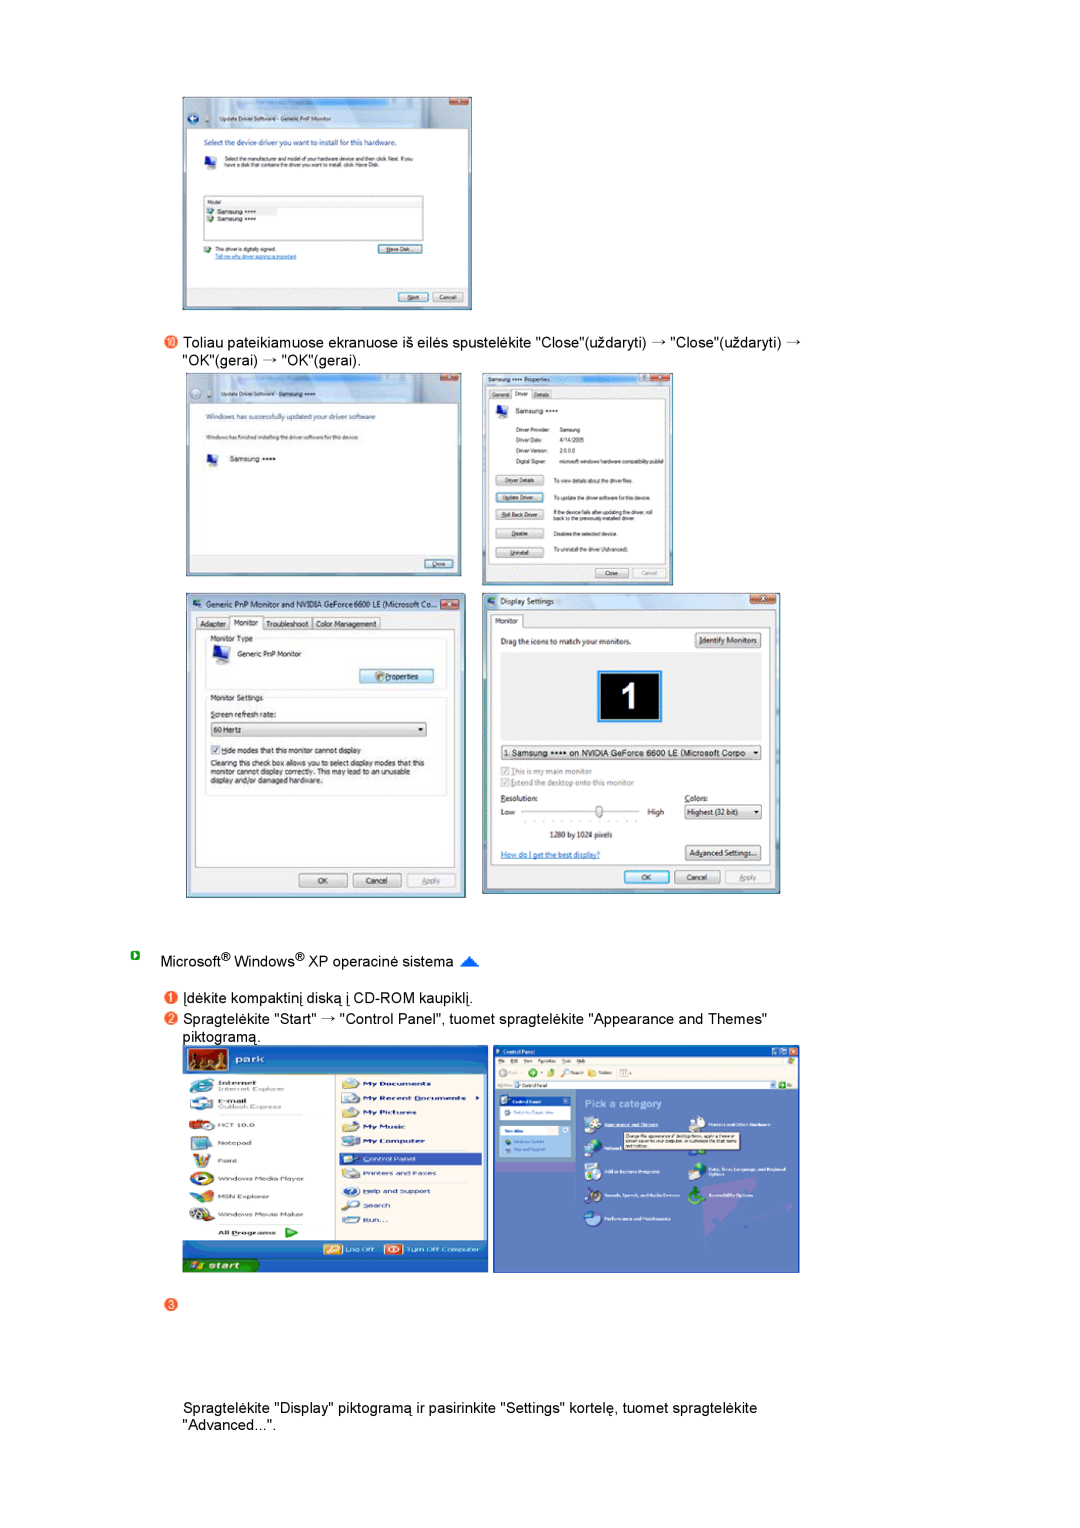 Samsung LS27HUBCB/EDC manual Microsoft Windows XP operacinė sistema, Įdėkite kompaktinį diską į CD-ROM kaupiklį 